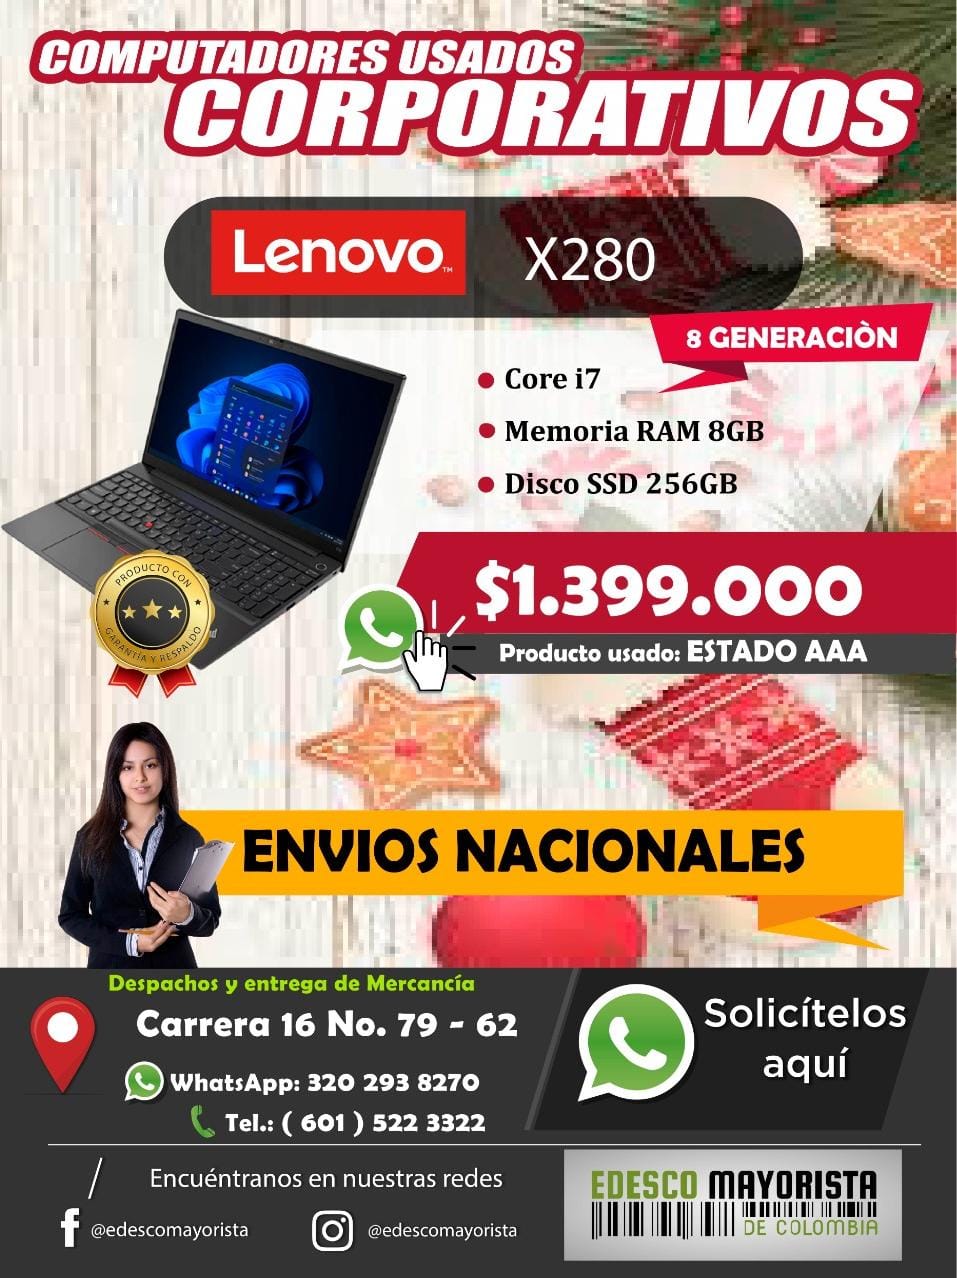 Lenovo X280